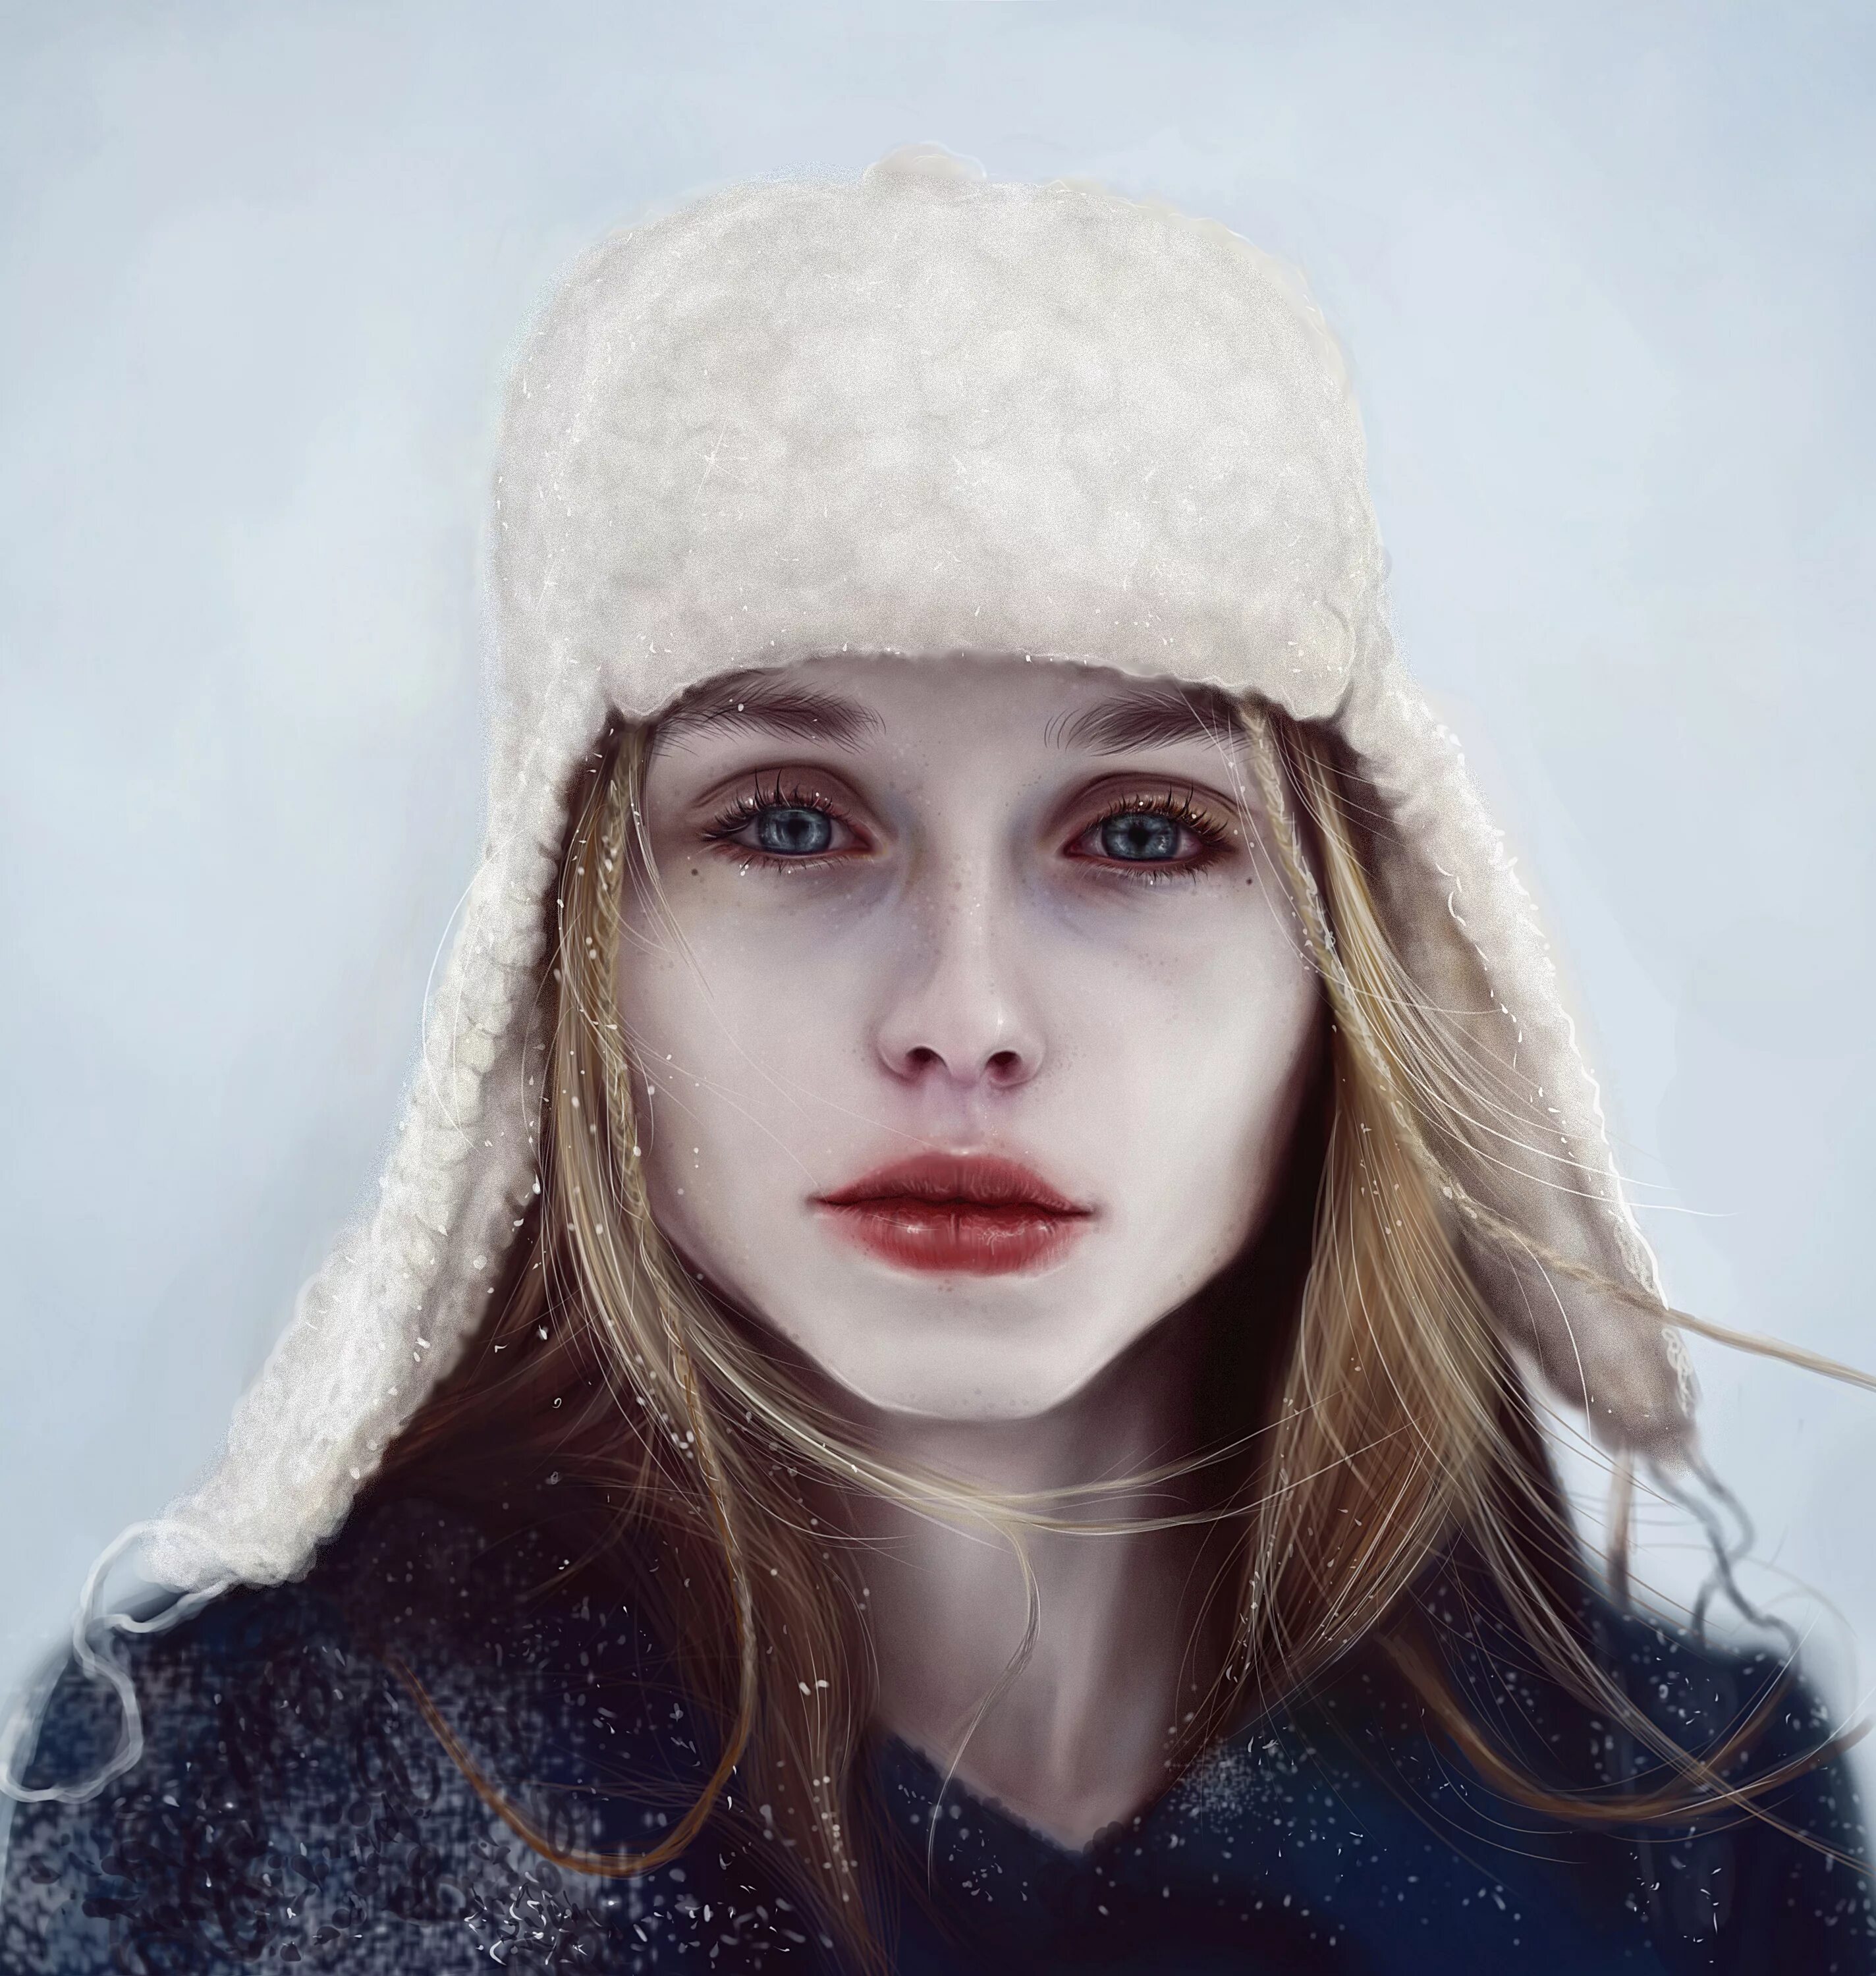 Бледная девушка. Девушка с бледной кожей. Снежная девушка. Зимний портрет.